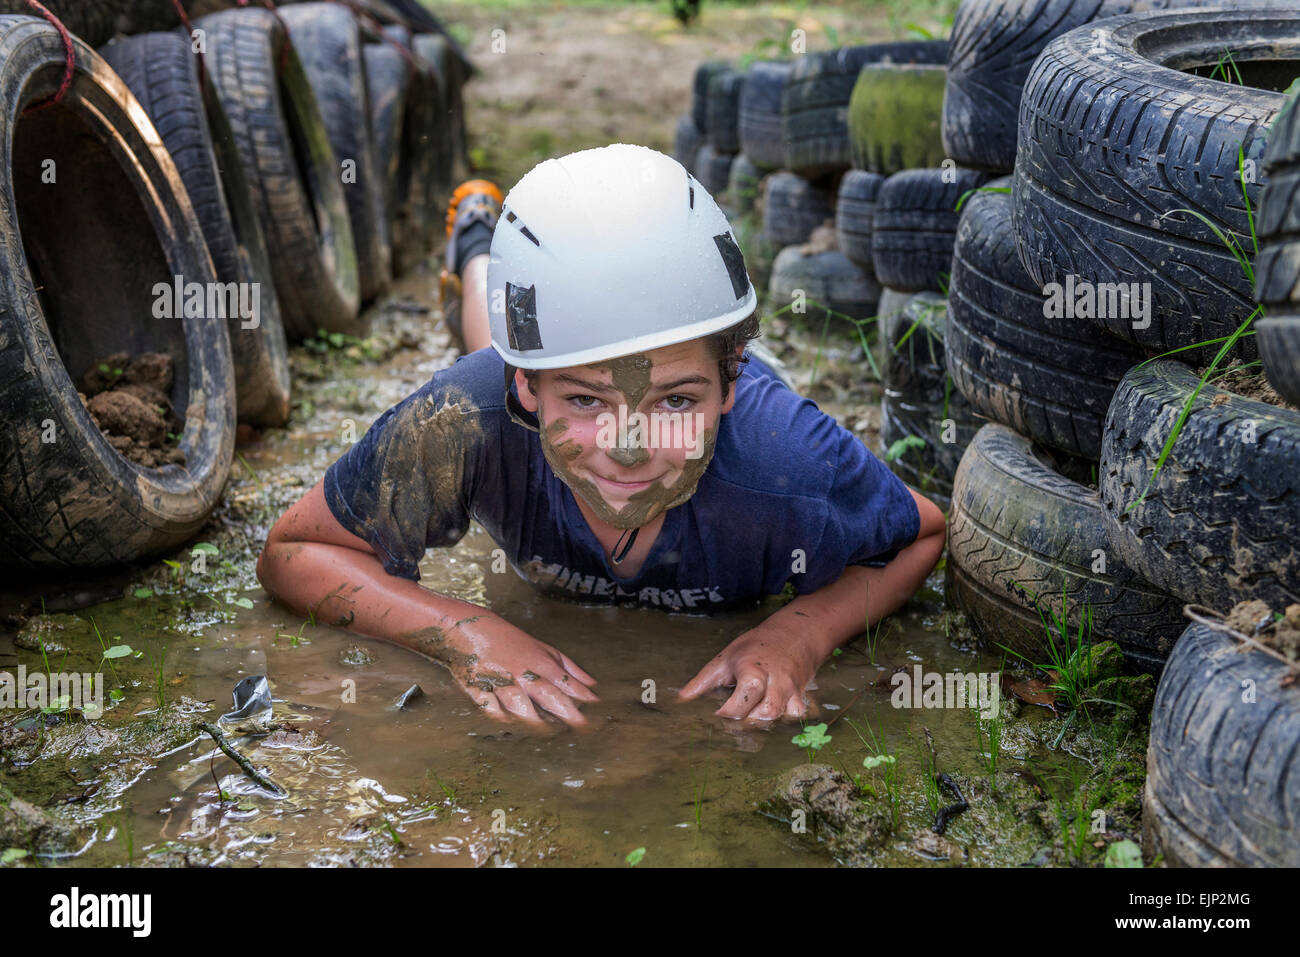 Adolescente arrastrándose en el fango en un supuesto asalto. Inglaterra. UK Foto de stock